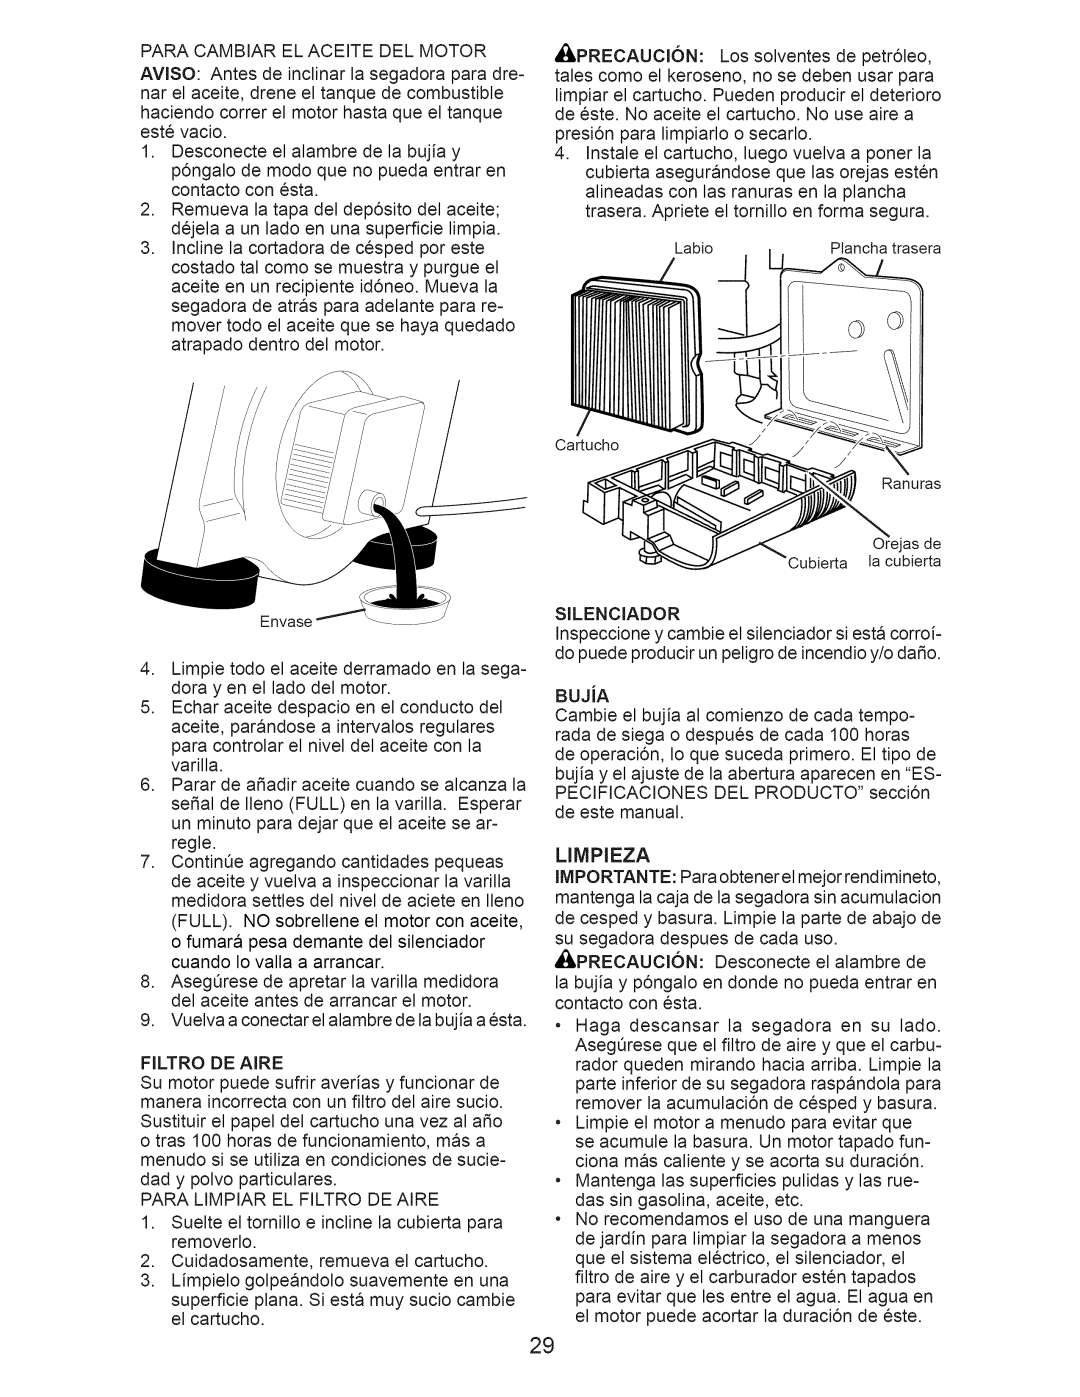 Craftsman 917.389011 manual BUJiA, Limpieza 